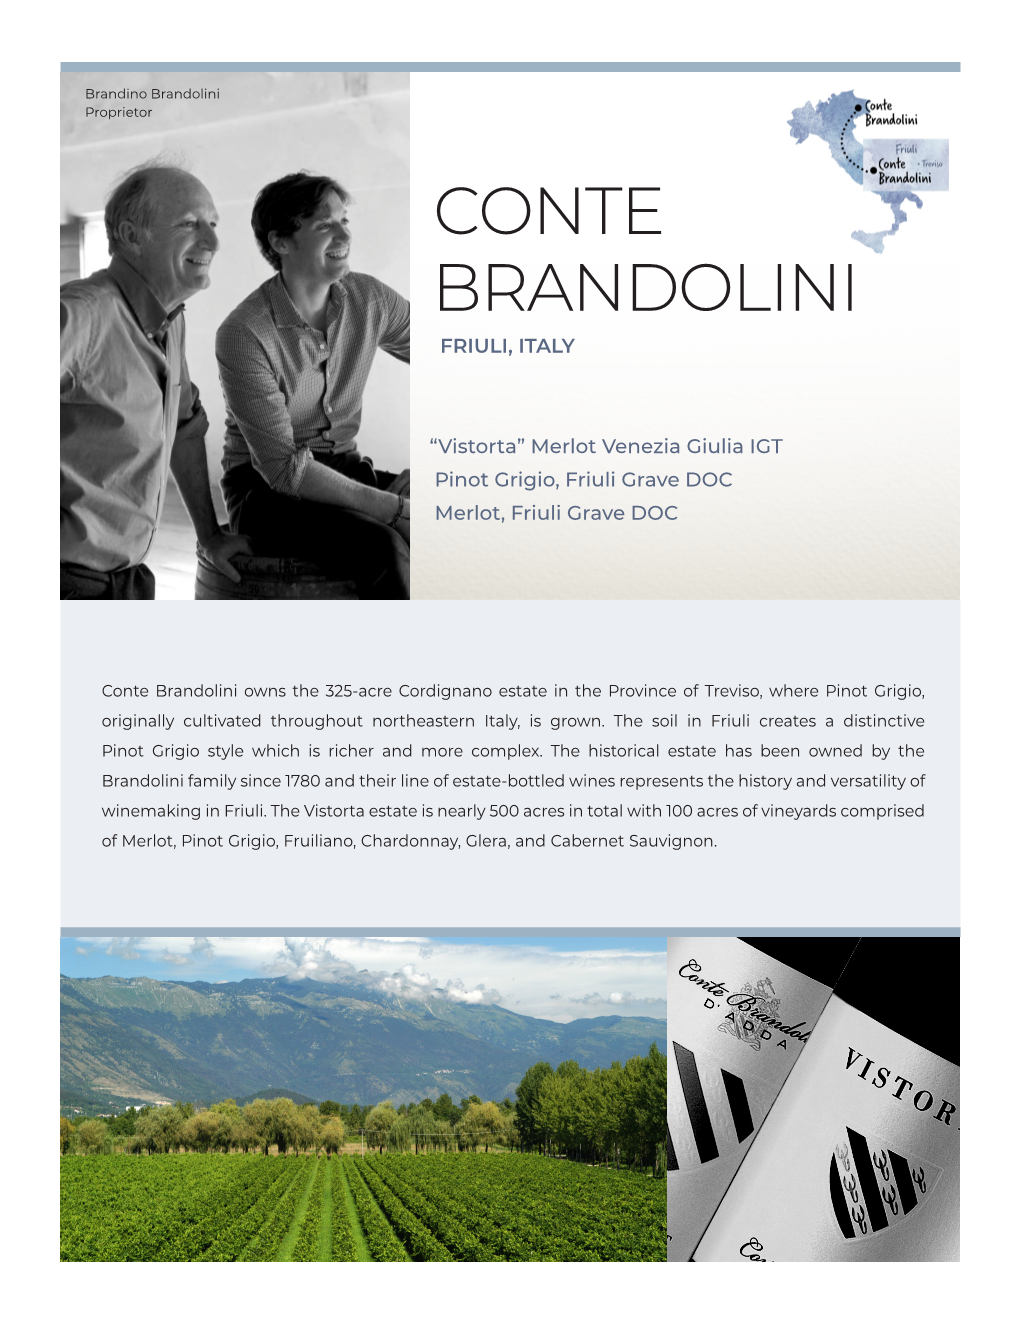 Conte Brandolini Friuli, Italy